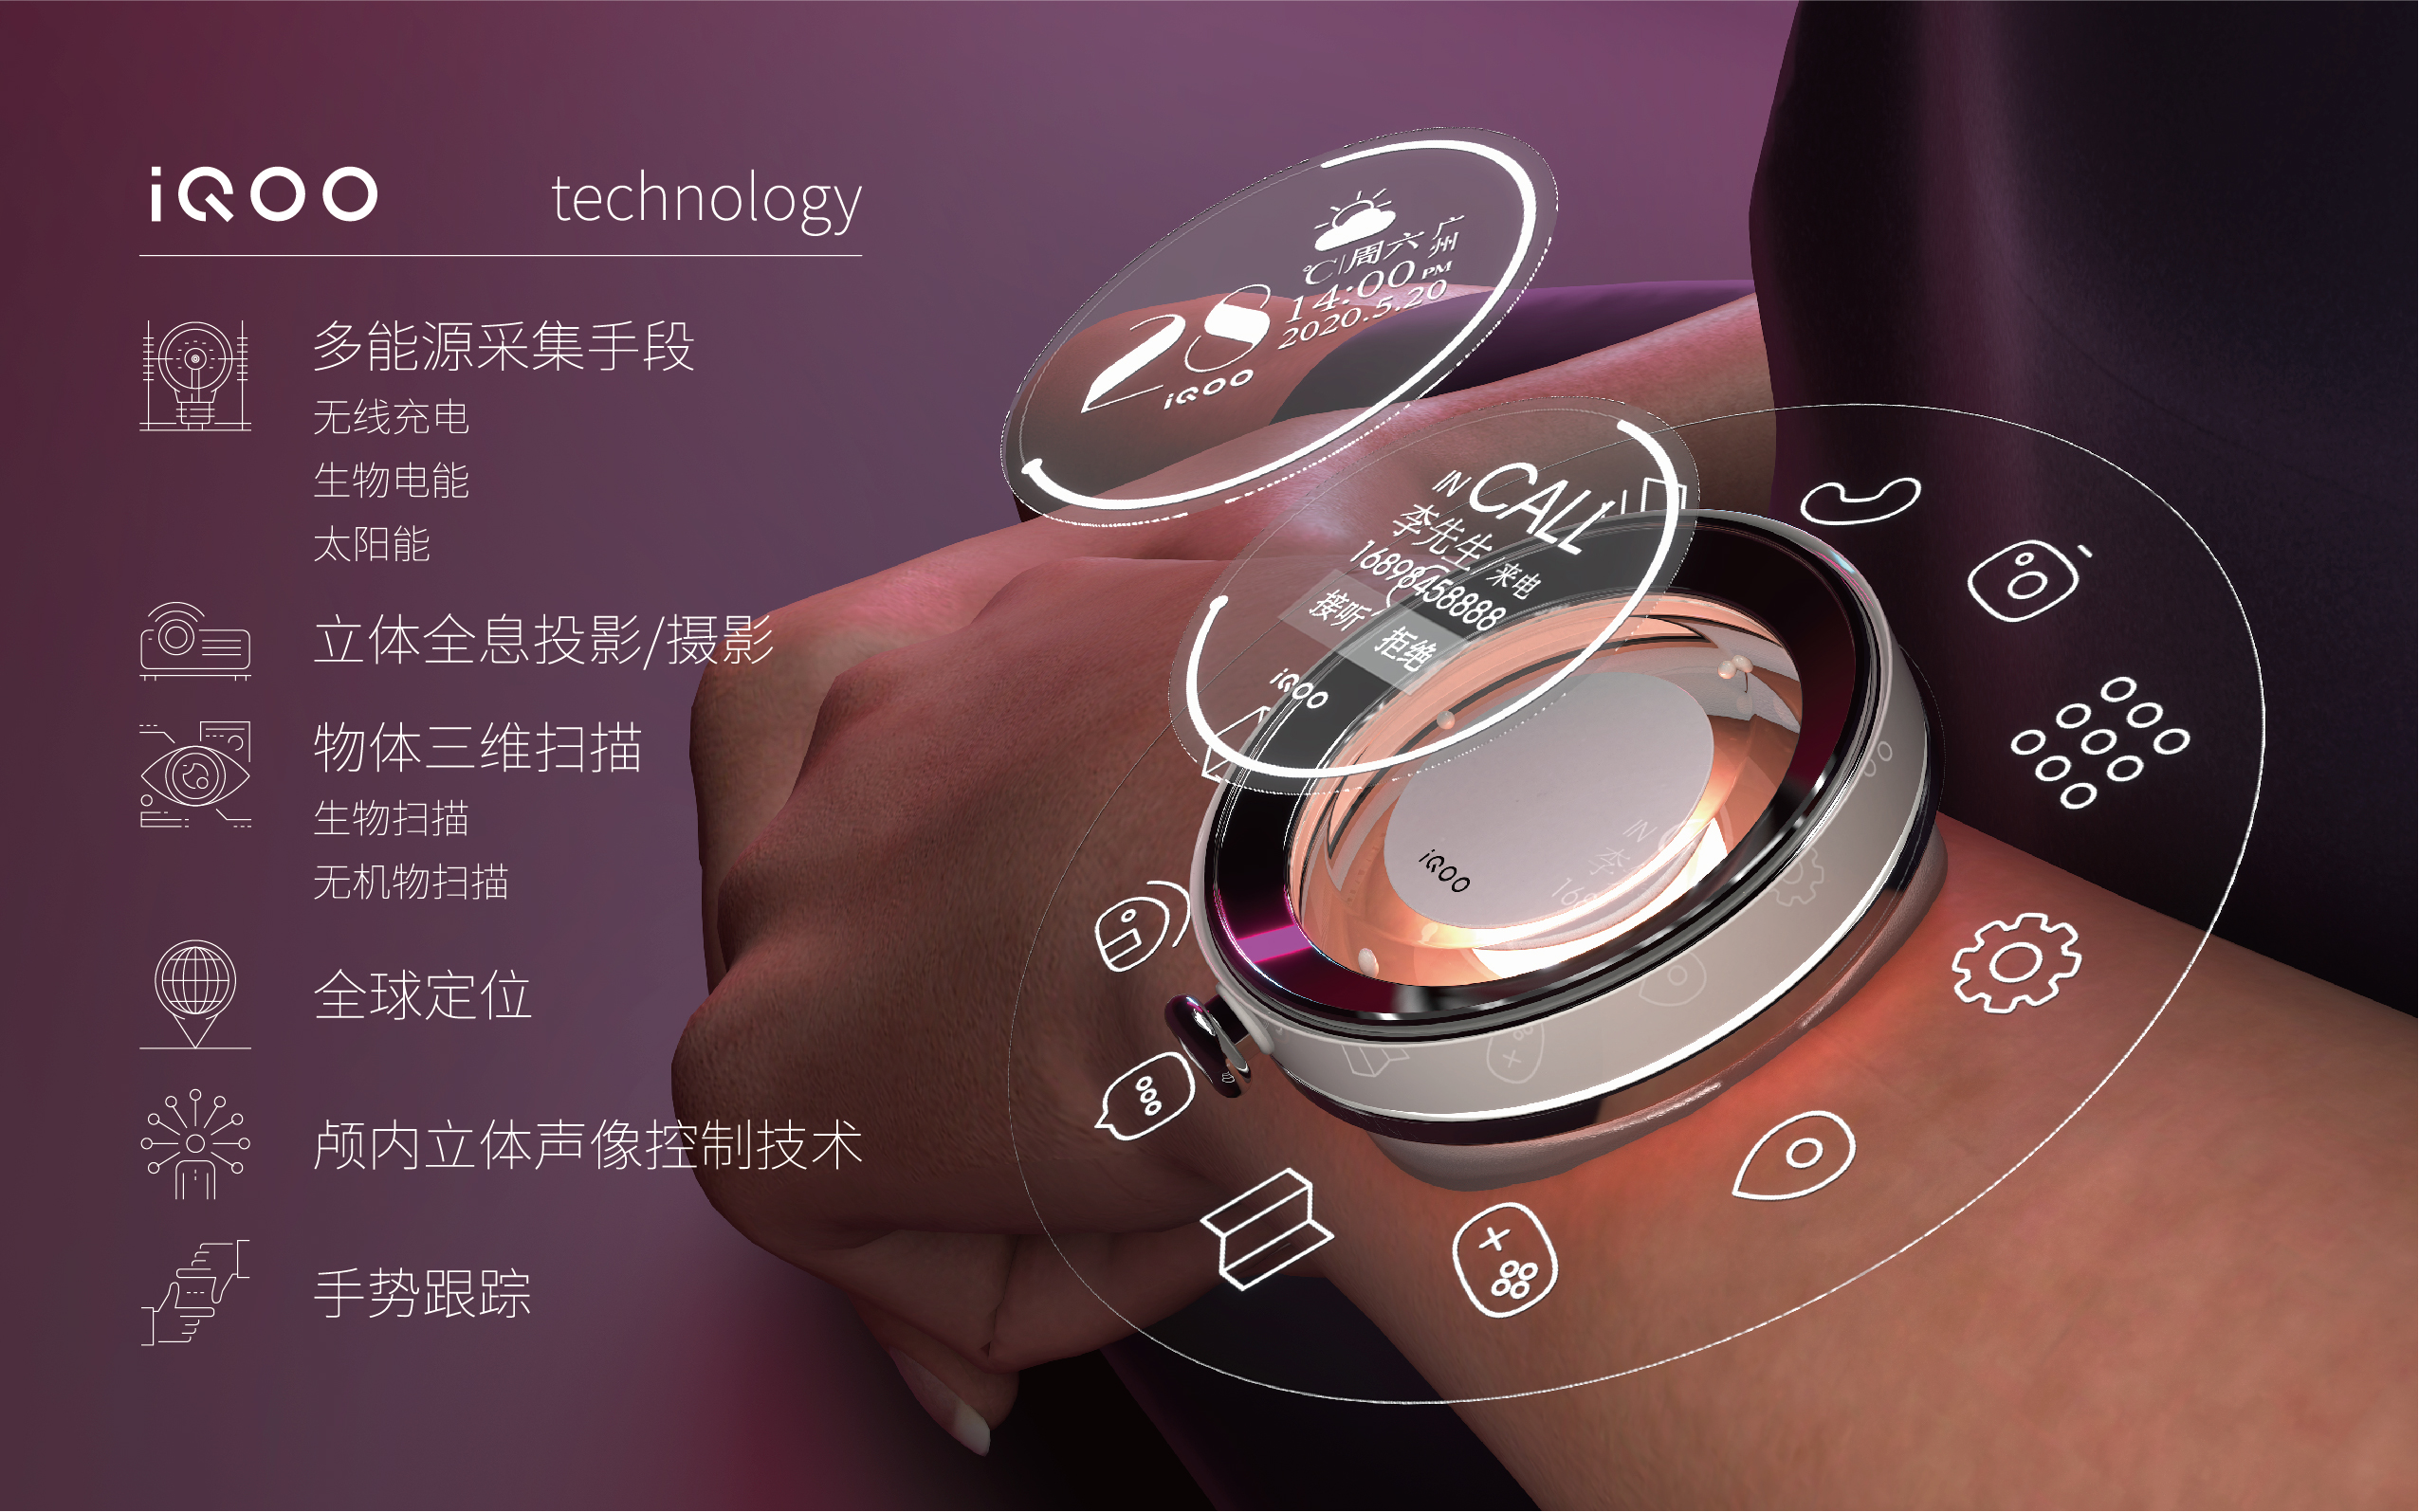 未来概念移动通讯终端产设计(vivo iqoo未来概念通讯产品设计)